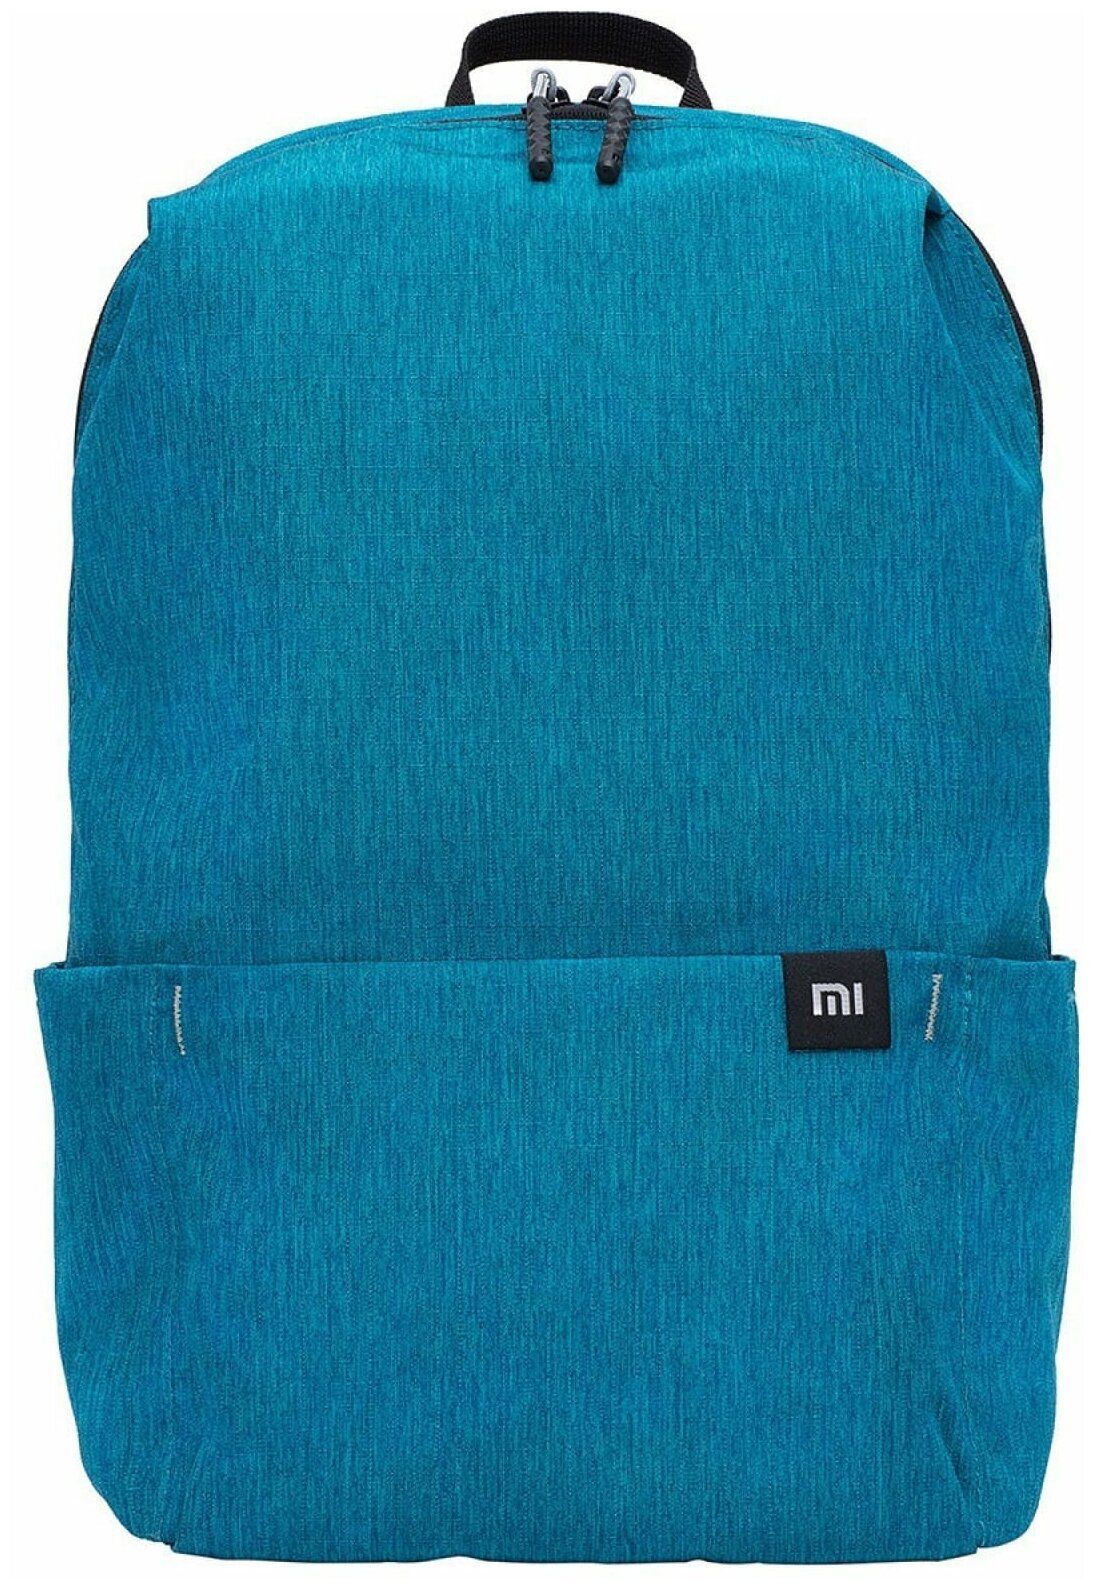 Рюкзак Xiaomi Mi Mini Backpack 10L Light Blue рюкзак xiaomi mi casual backpack blue